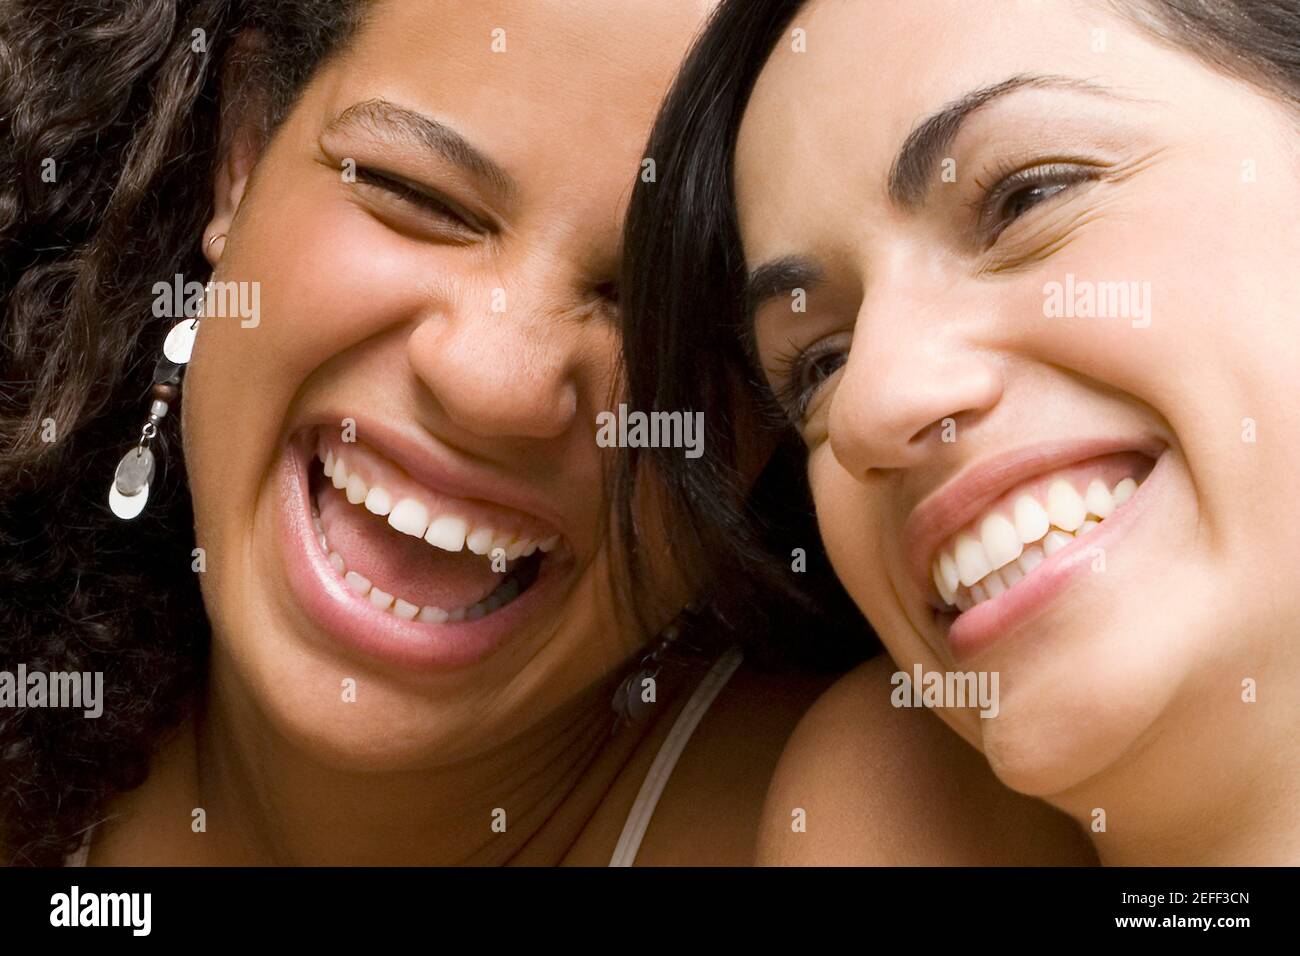 Primer plano de una joven sonriendo con su amiga Foto de stock